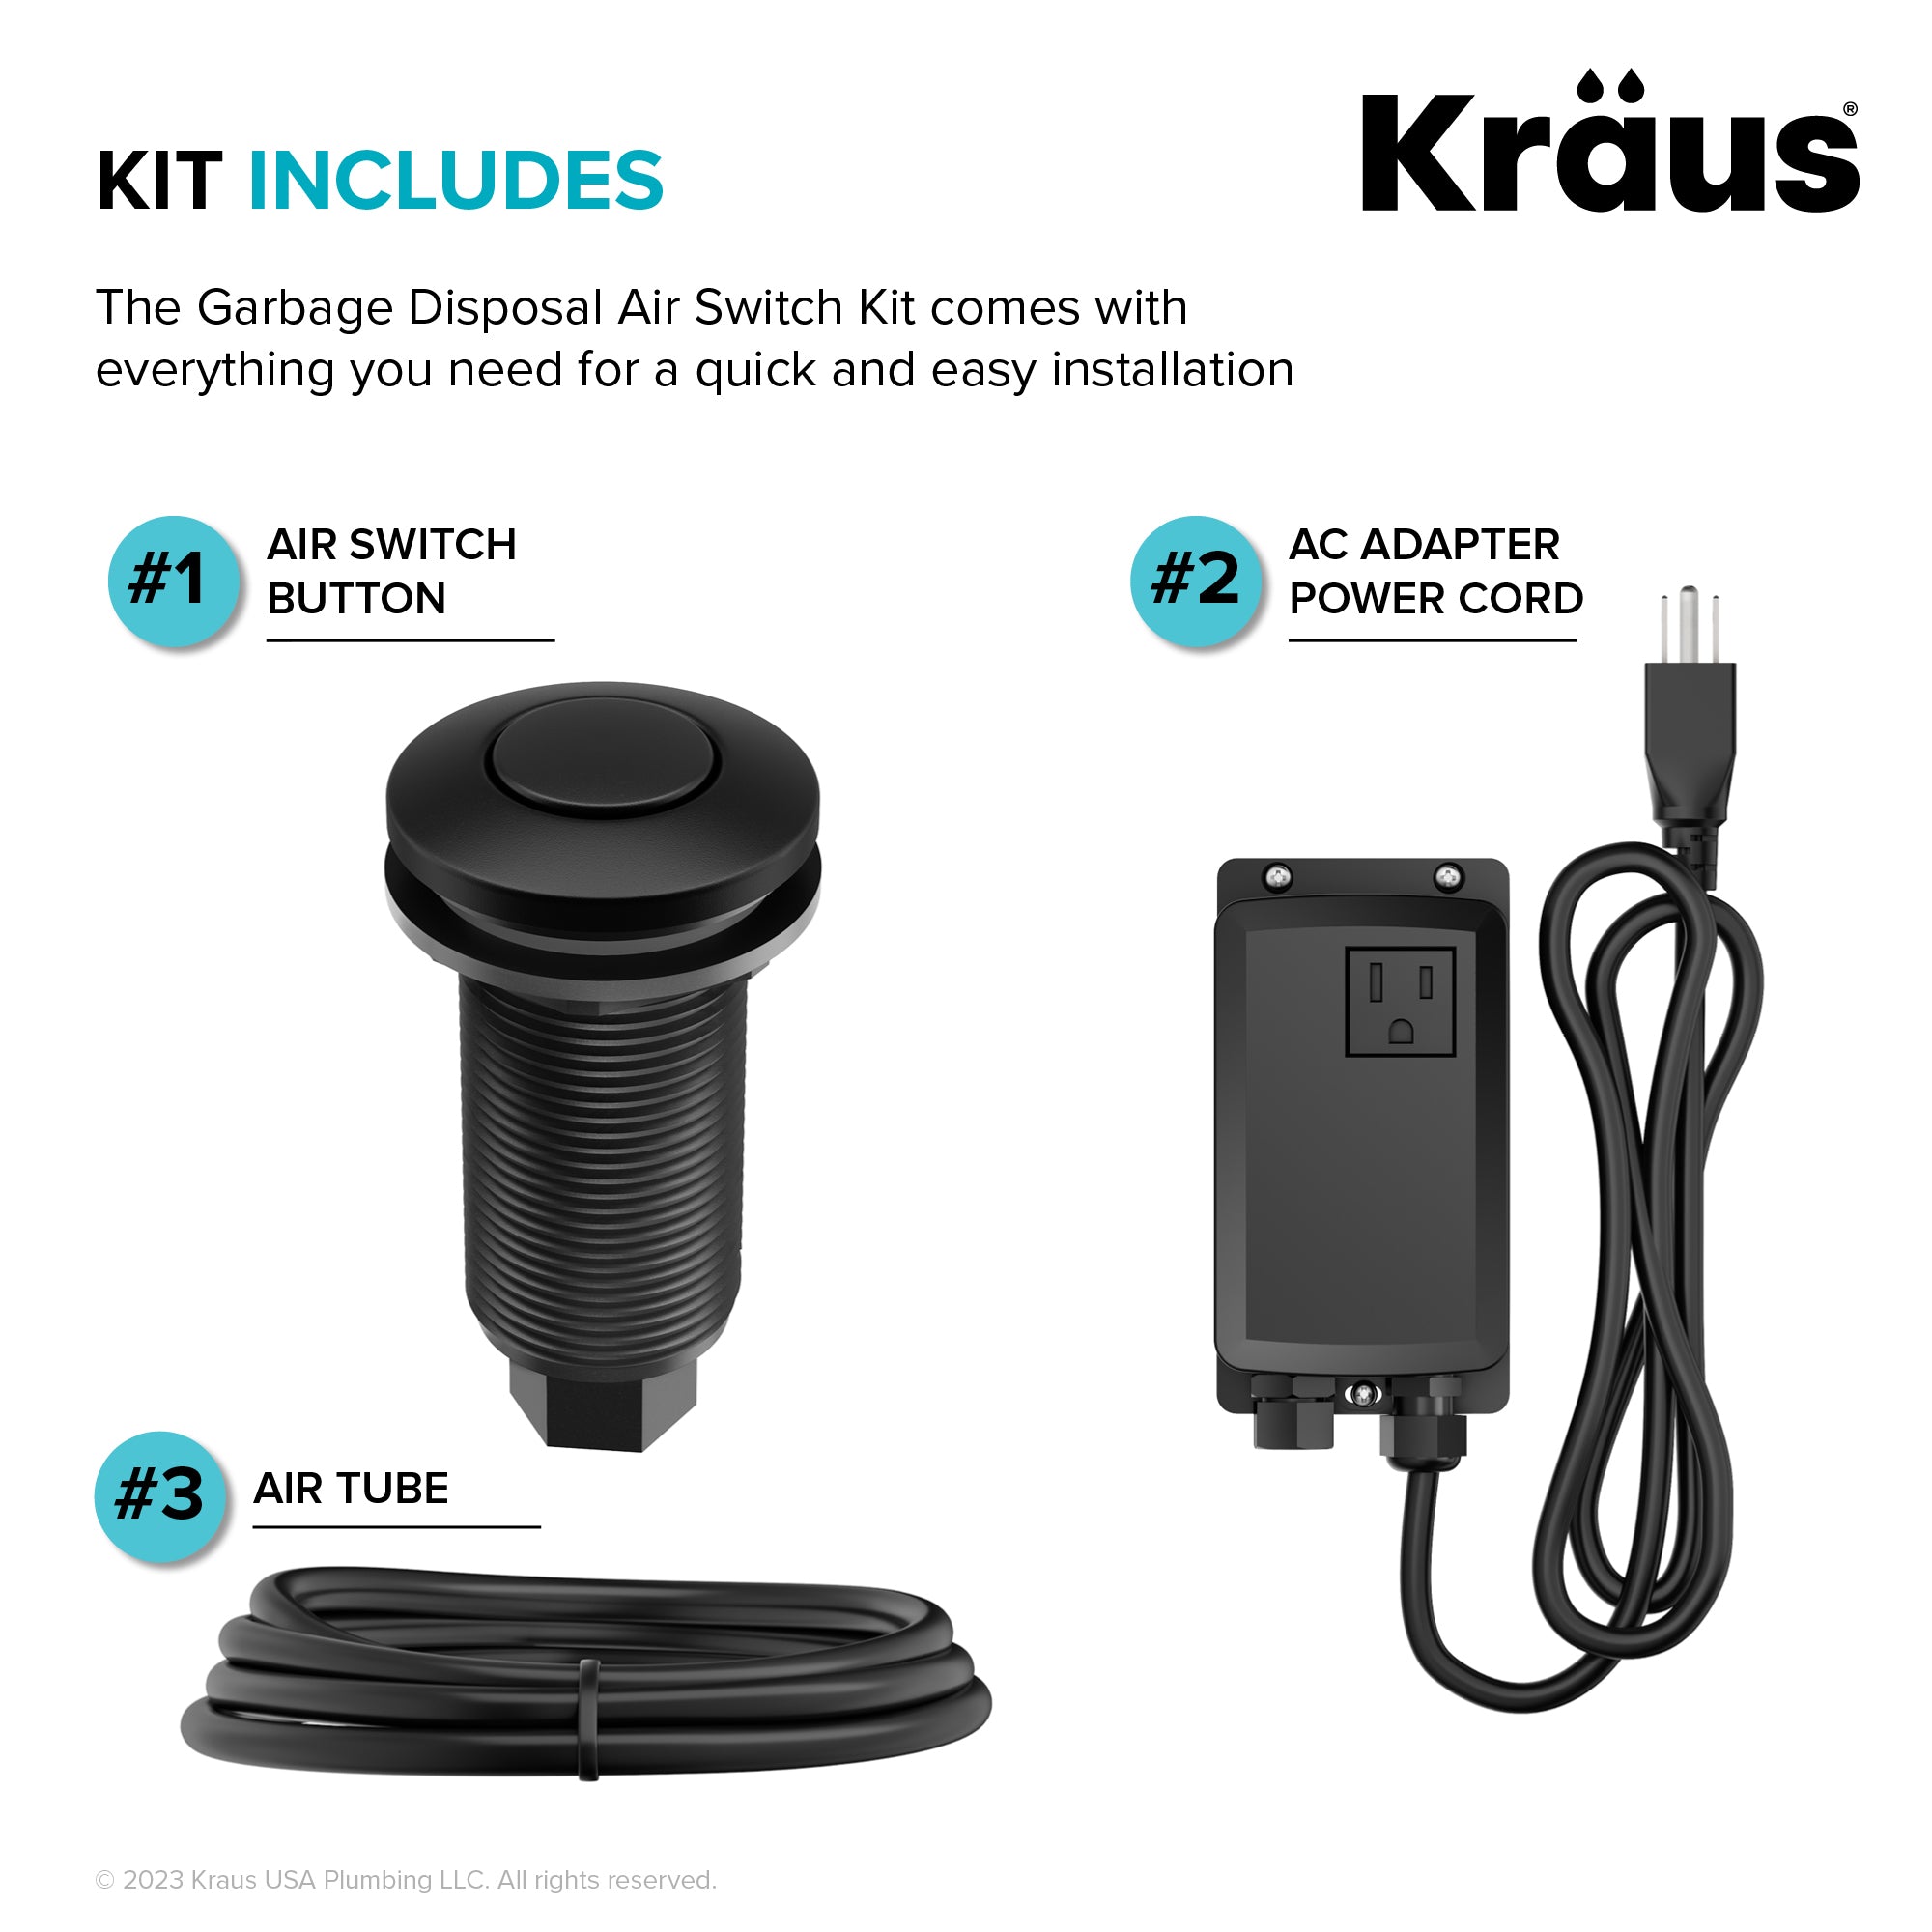 KRAUS Garbage Disposal Push Button Air Switch Kit in Matte Black